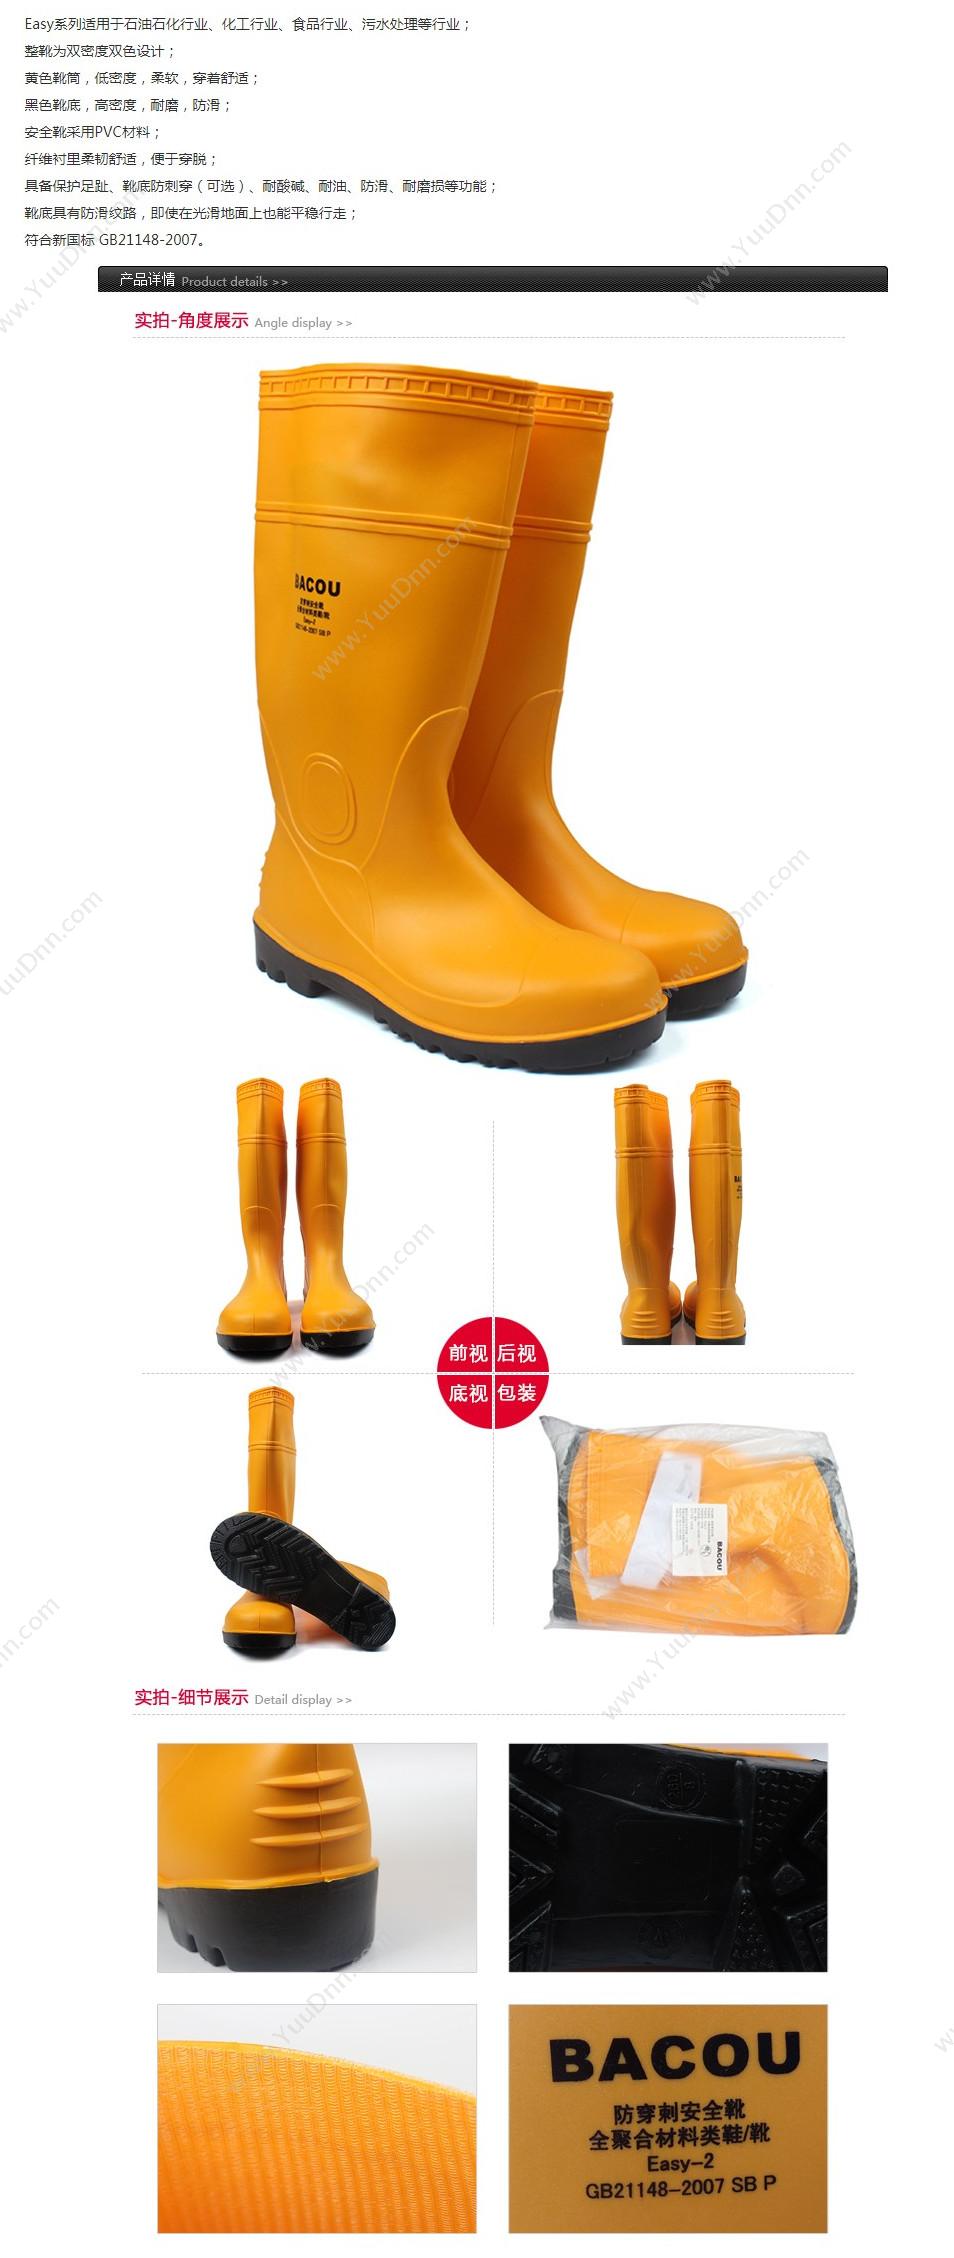 霍尼韦尔 Honeywell 75707 PVC 安全靴Easy 轻型 46 橘黄色 10双/箱 轻便鞋安全靴